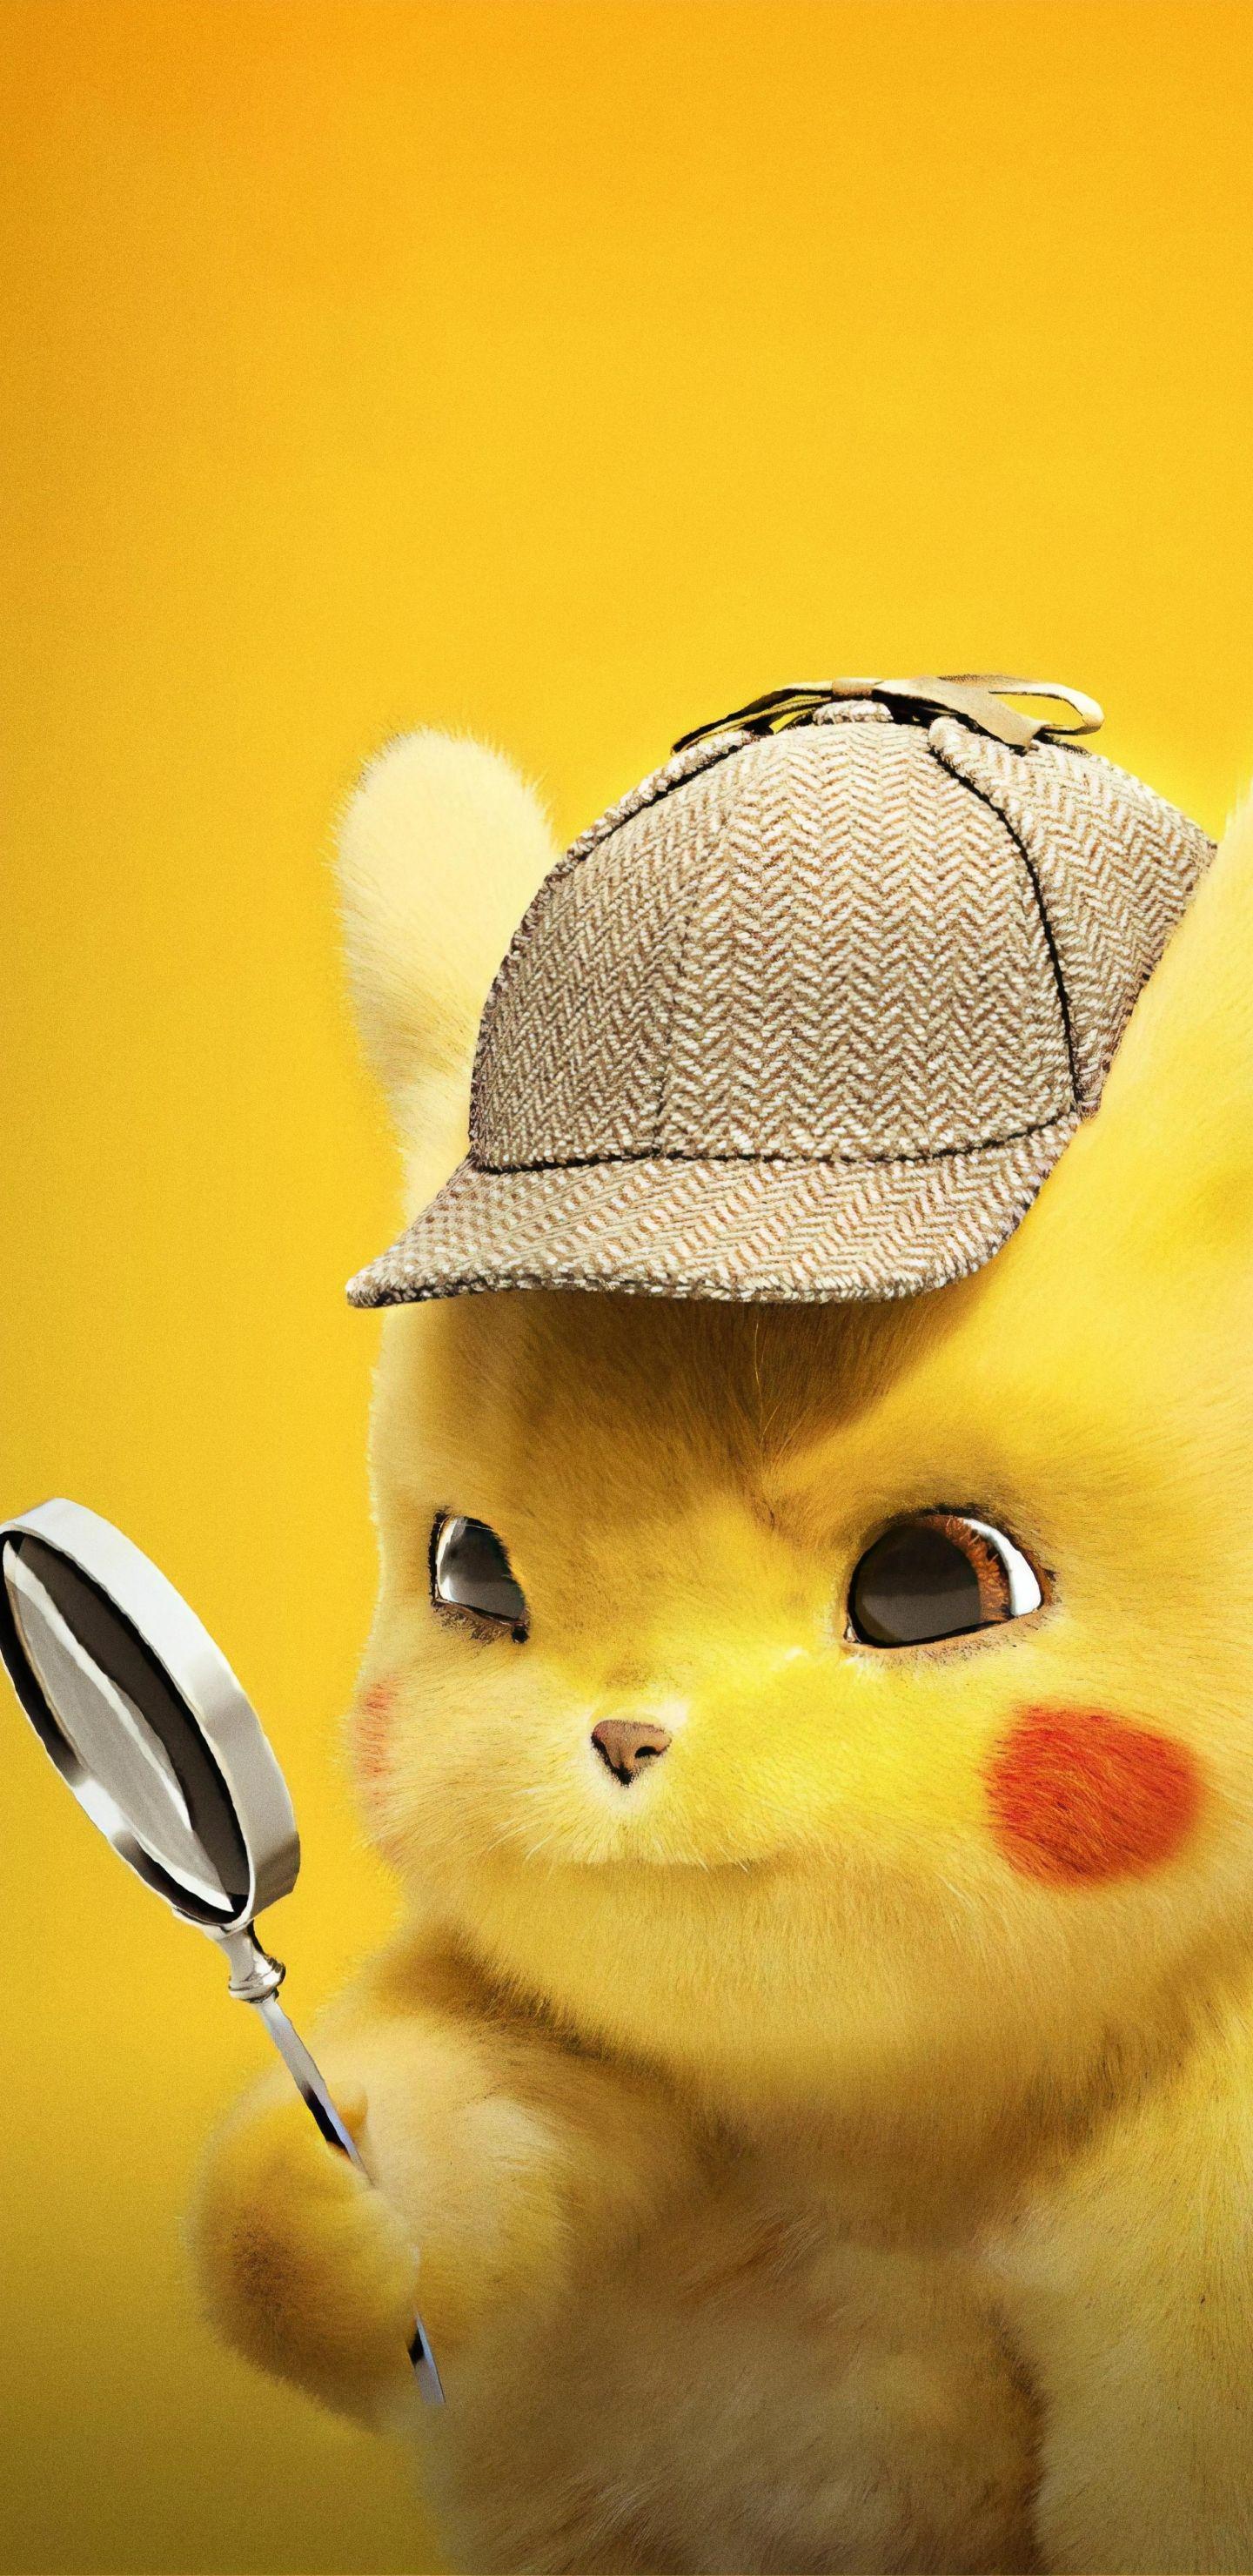 Pokemon Detective Pikachu Wallpaper iPhone 1440x2960 Pokemon